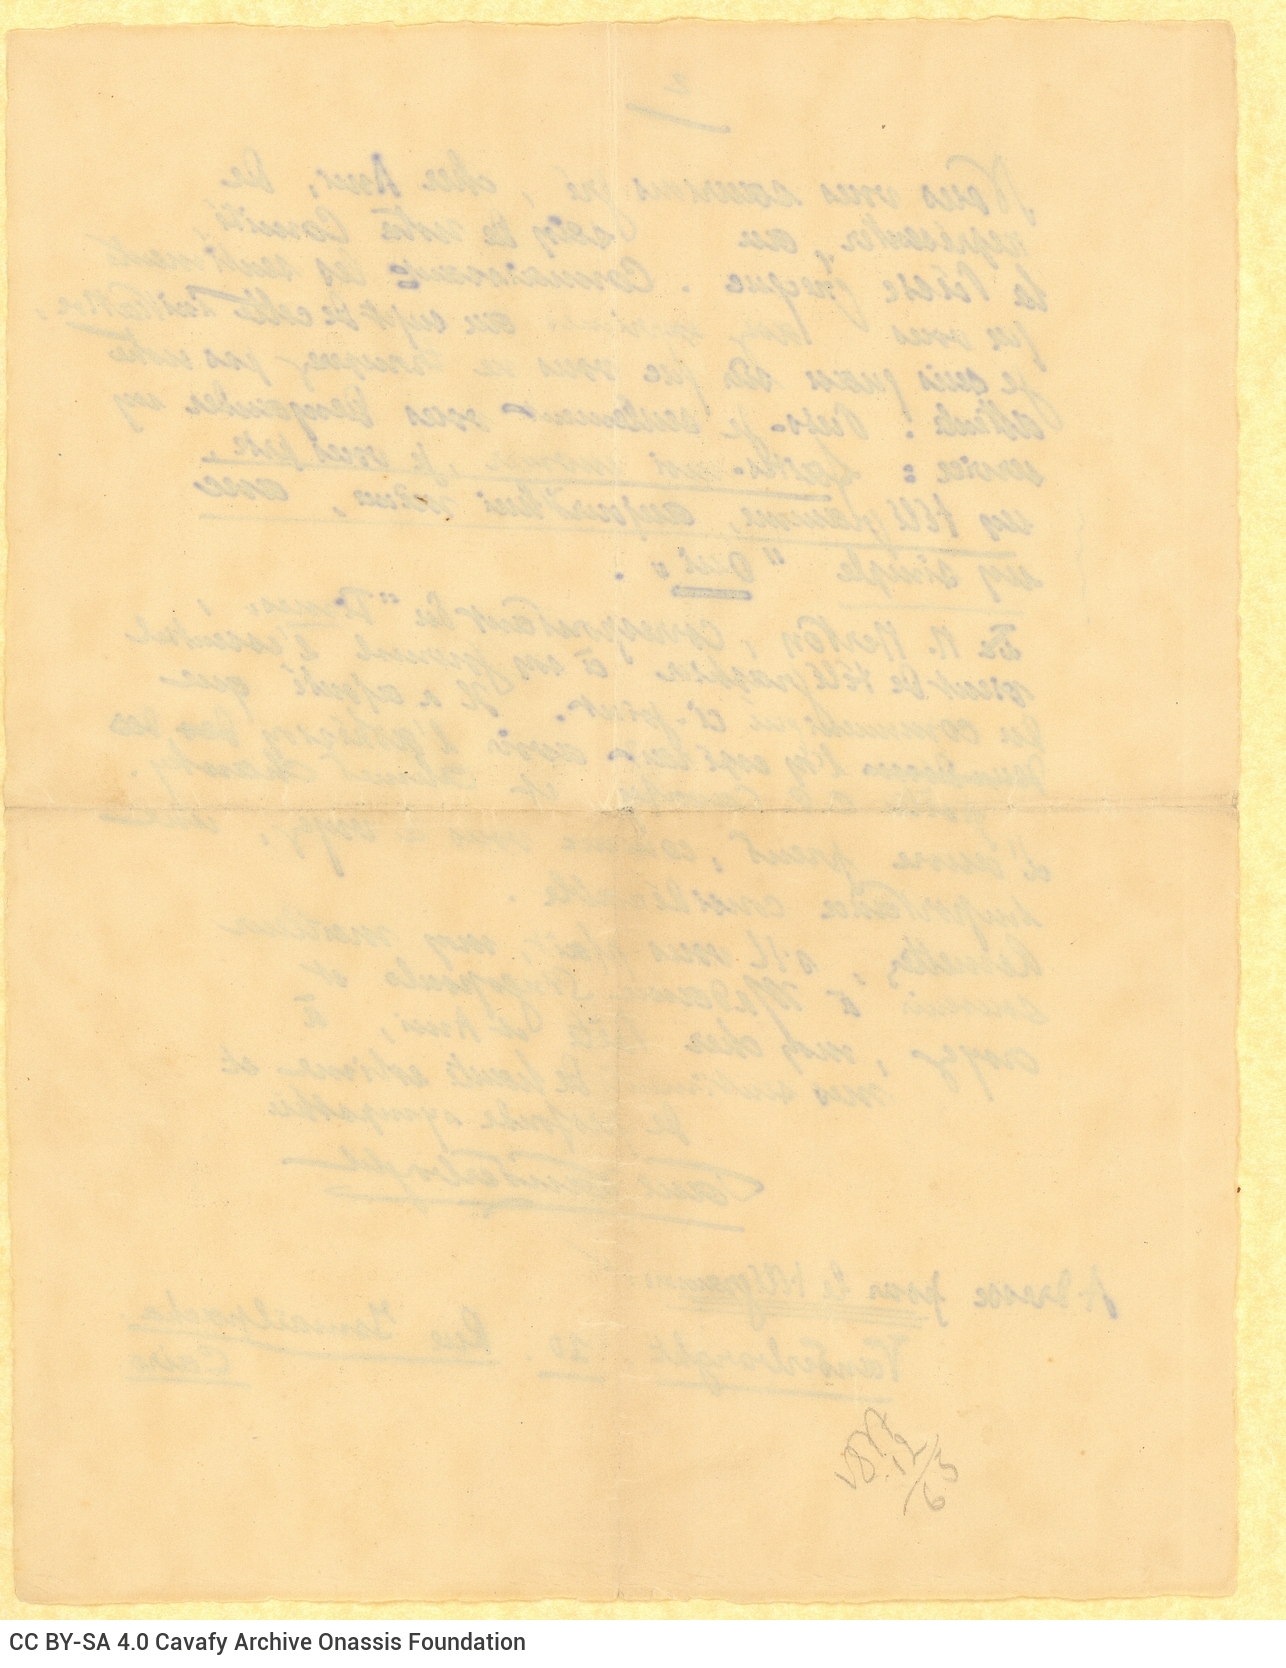 Χειρόγραφη επιστολή του Πωλ Βαντερμπόρτ (Paul Vanderborght) προς τον Καβάφη �